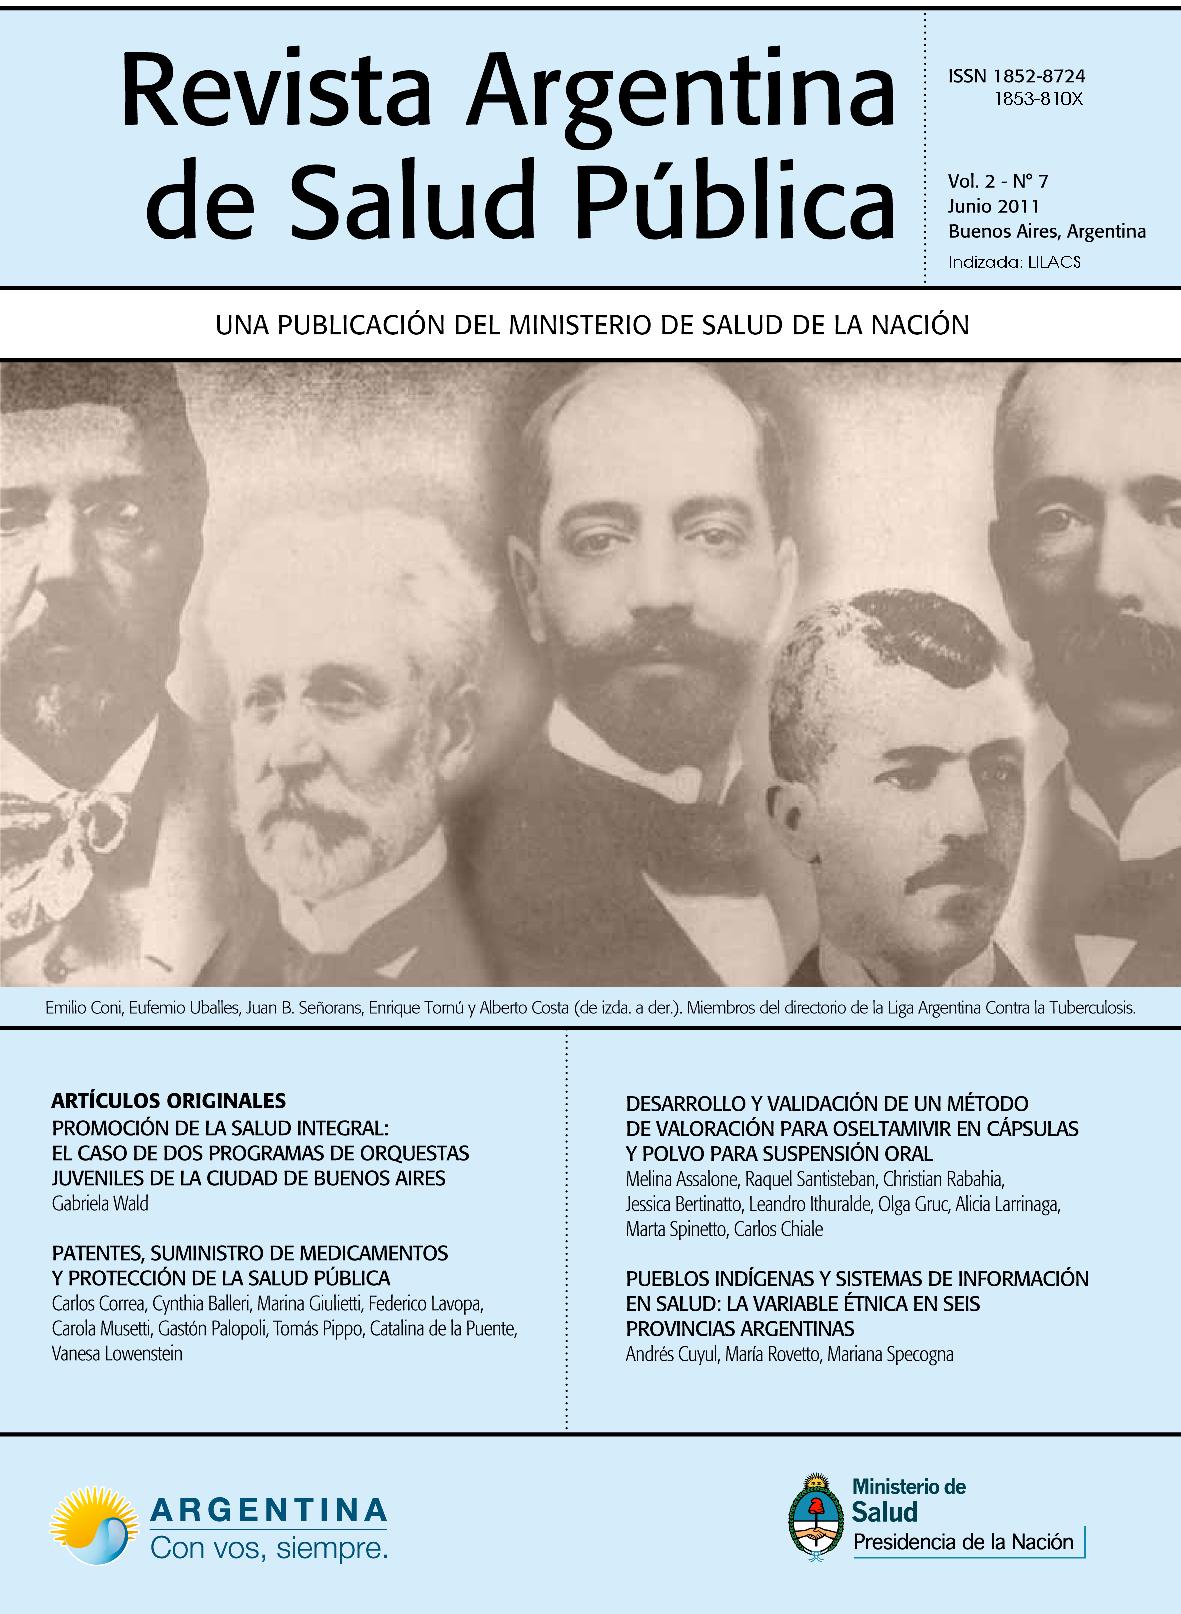 					View Vol. 2 No. 7 (2011): Revista Argentina de Salud Pública
				